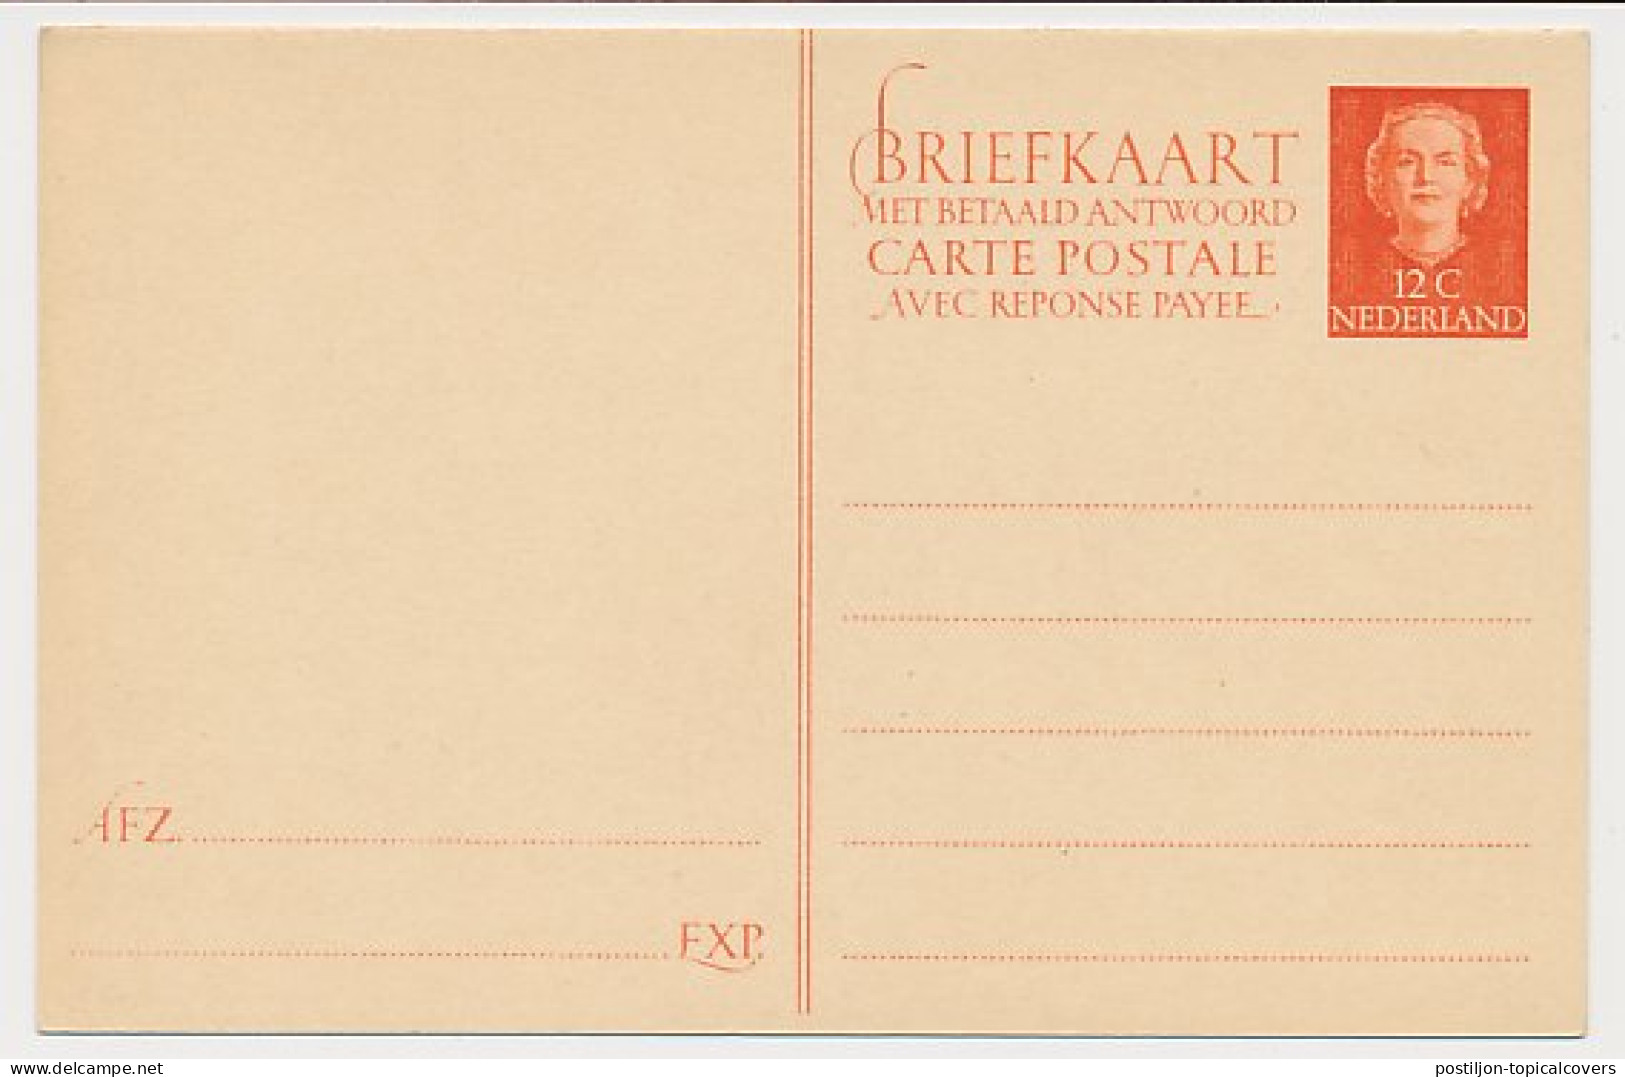 Briefkaart G. 305 - Ganzsachen